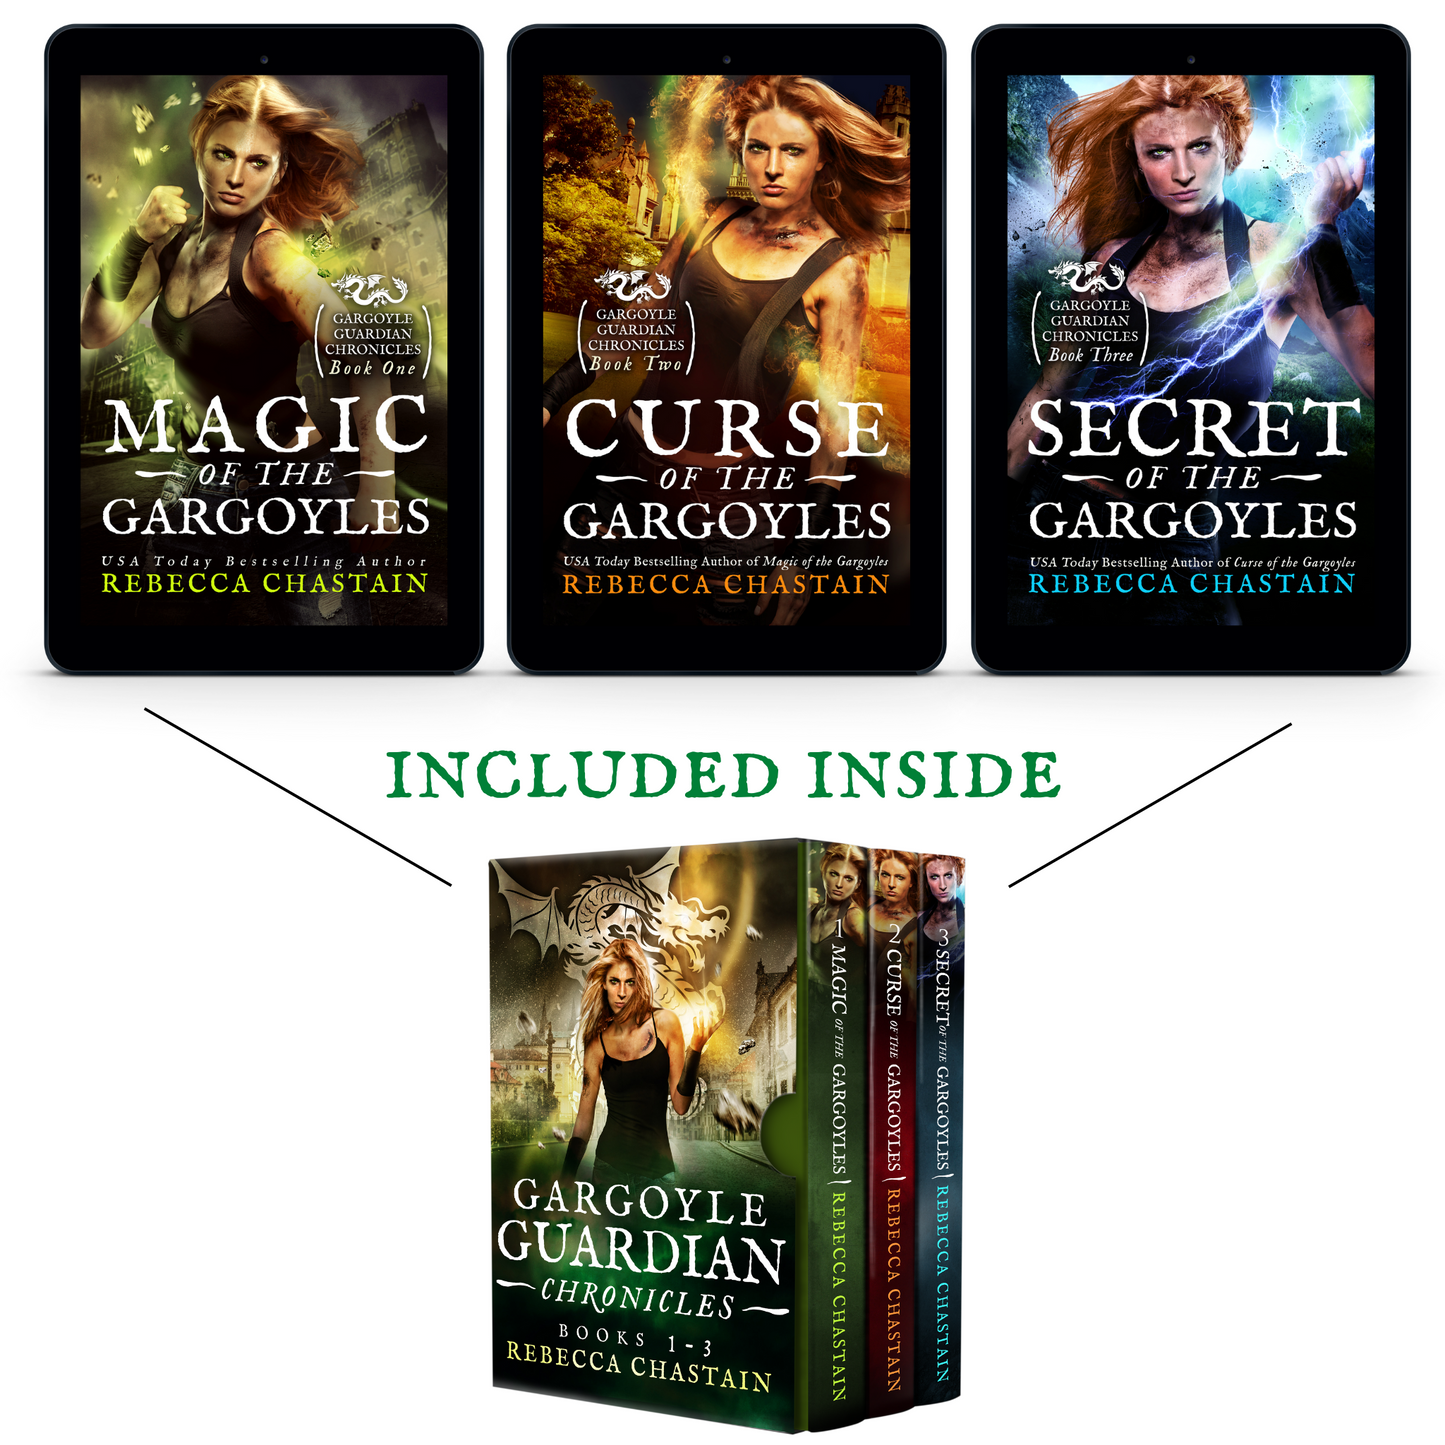 Gargoyle Guardian Chronicles Omnibus (Books 1-3)